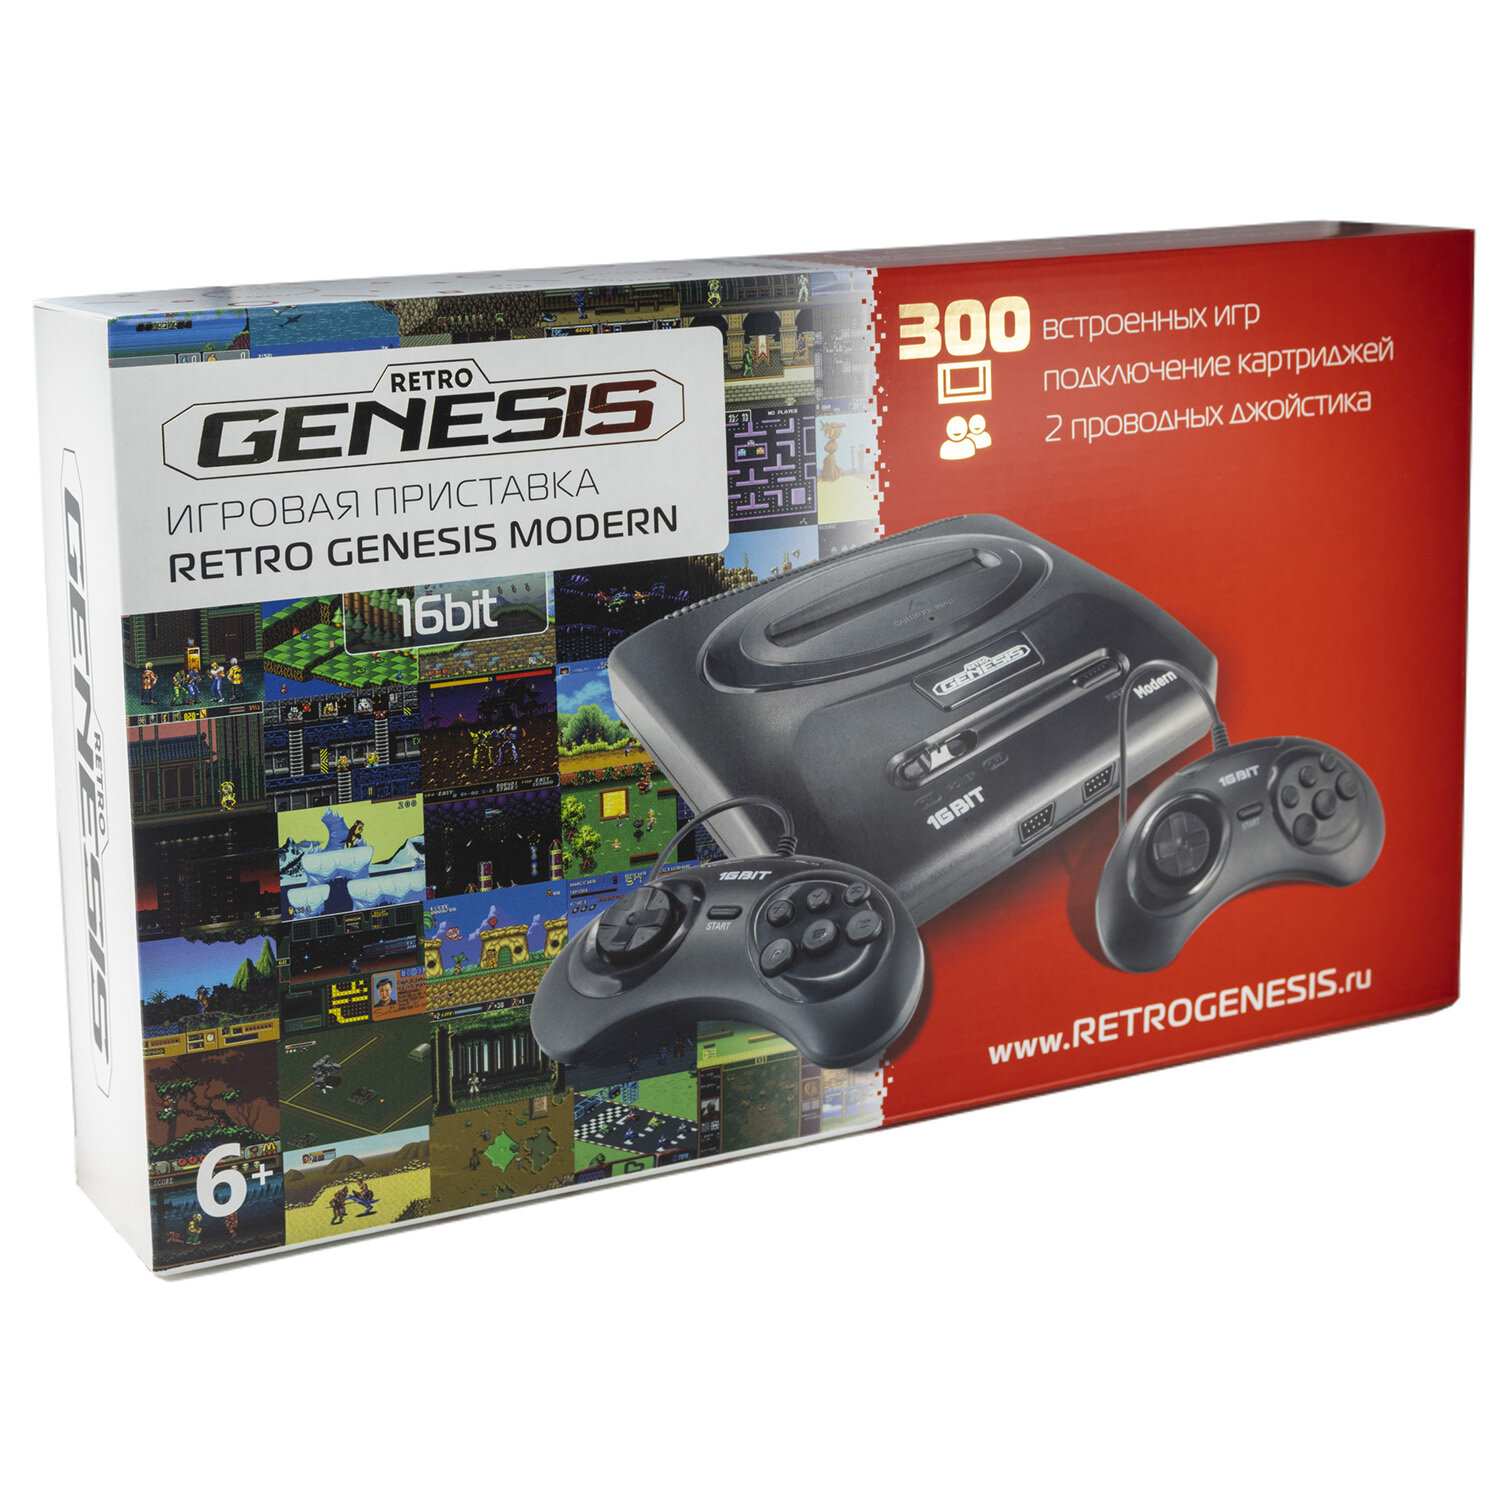 Retro Genesis Игровая приставка Retro Genesis SEGA Retro Genesis Modern ConSkDn92 (Sega) + 300 игр + 2 проводных джойстика